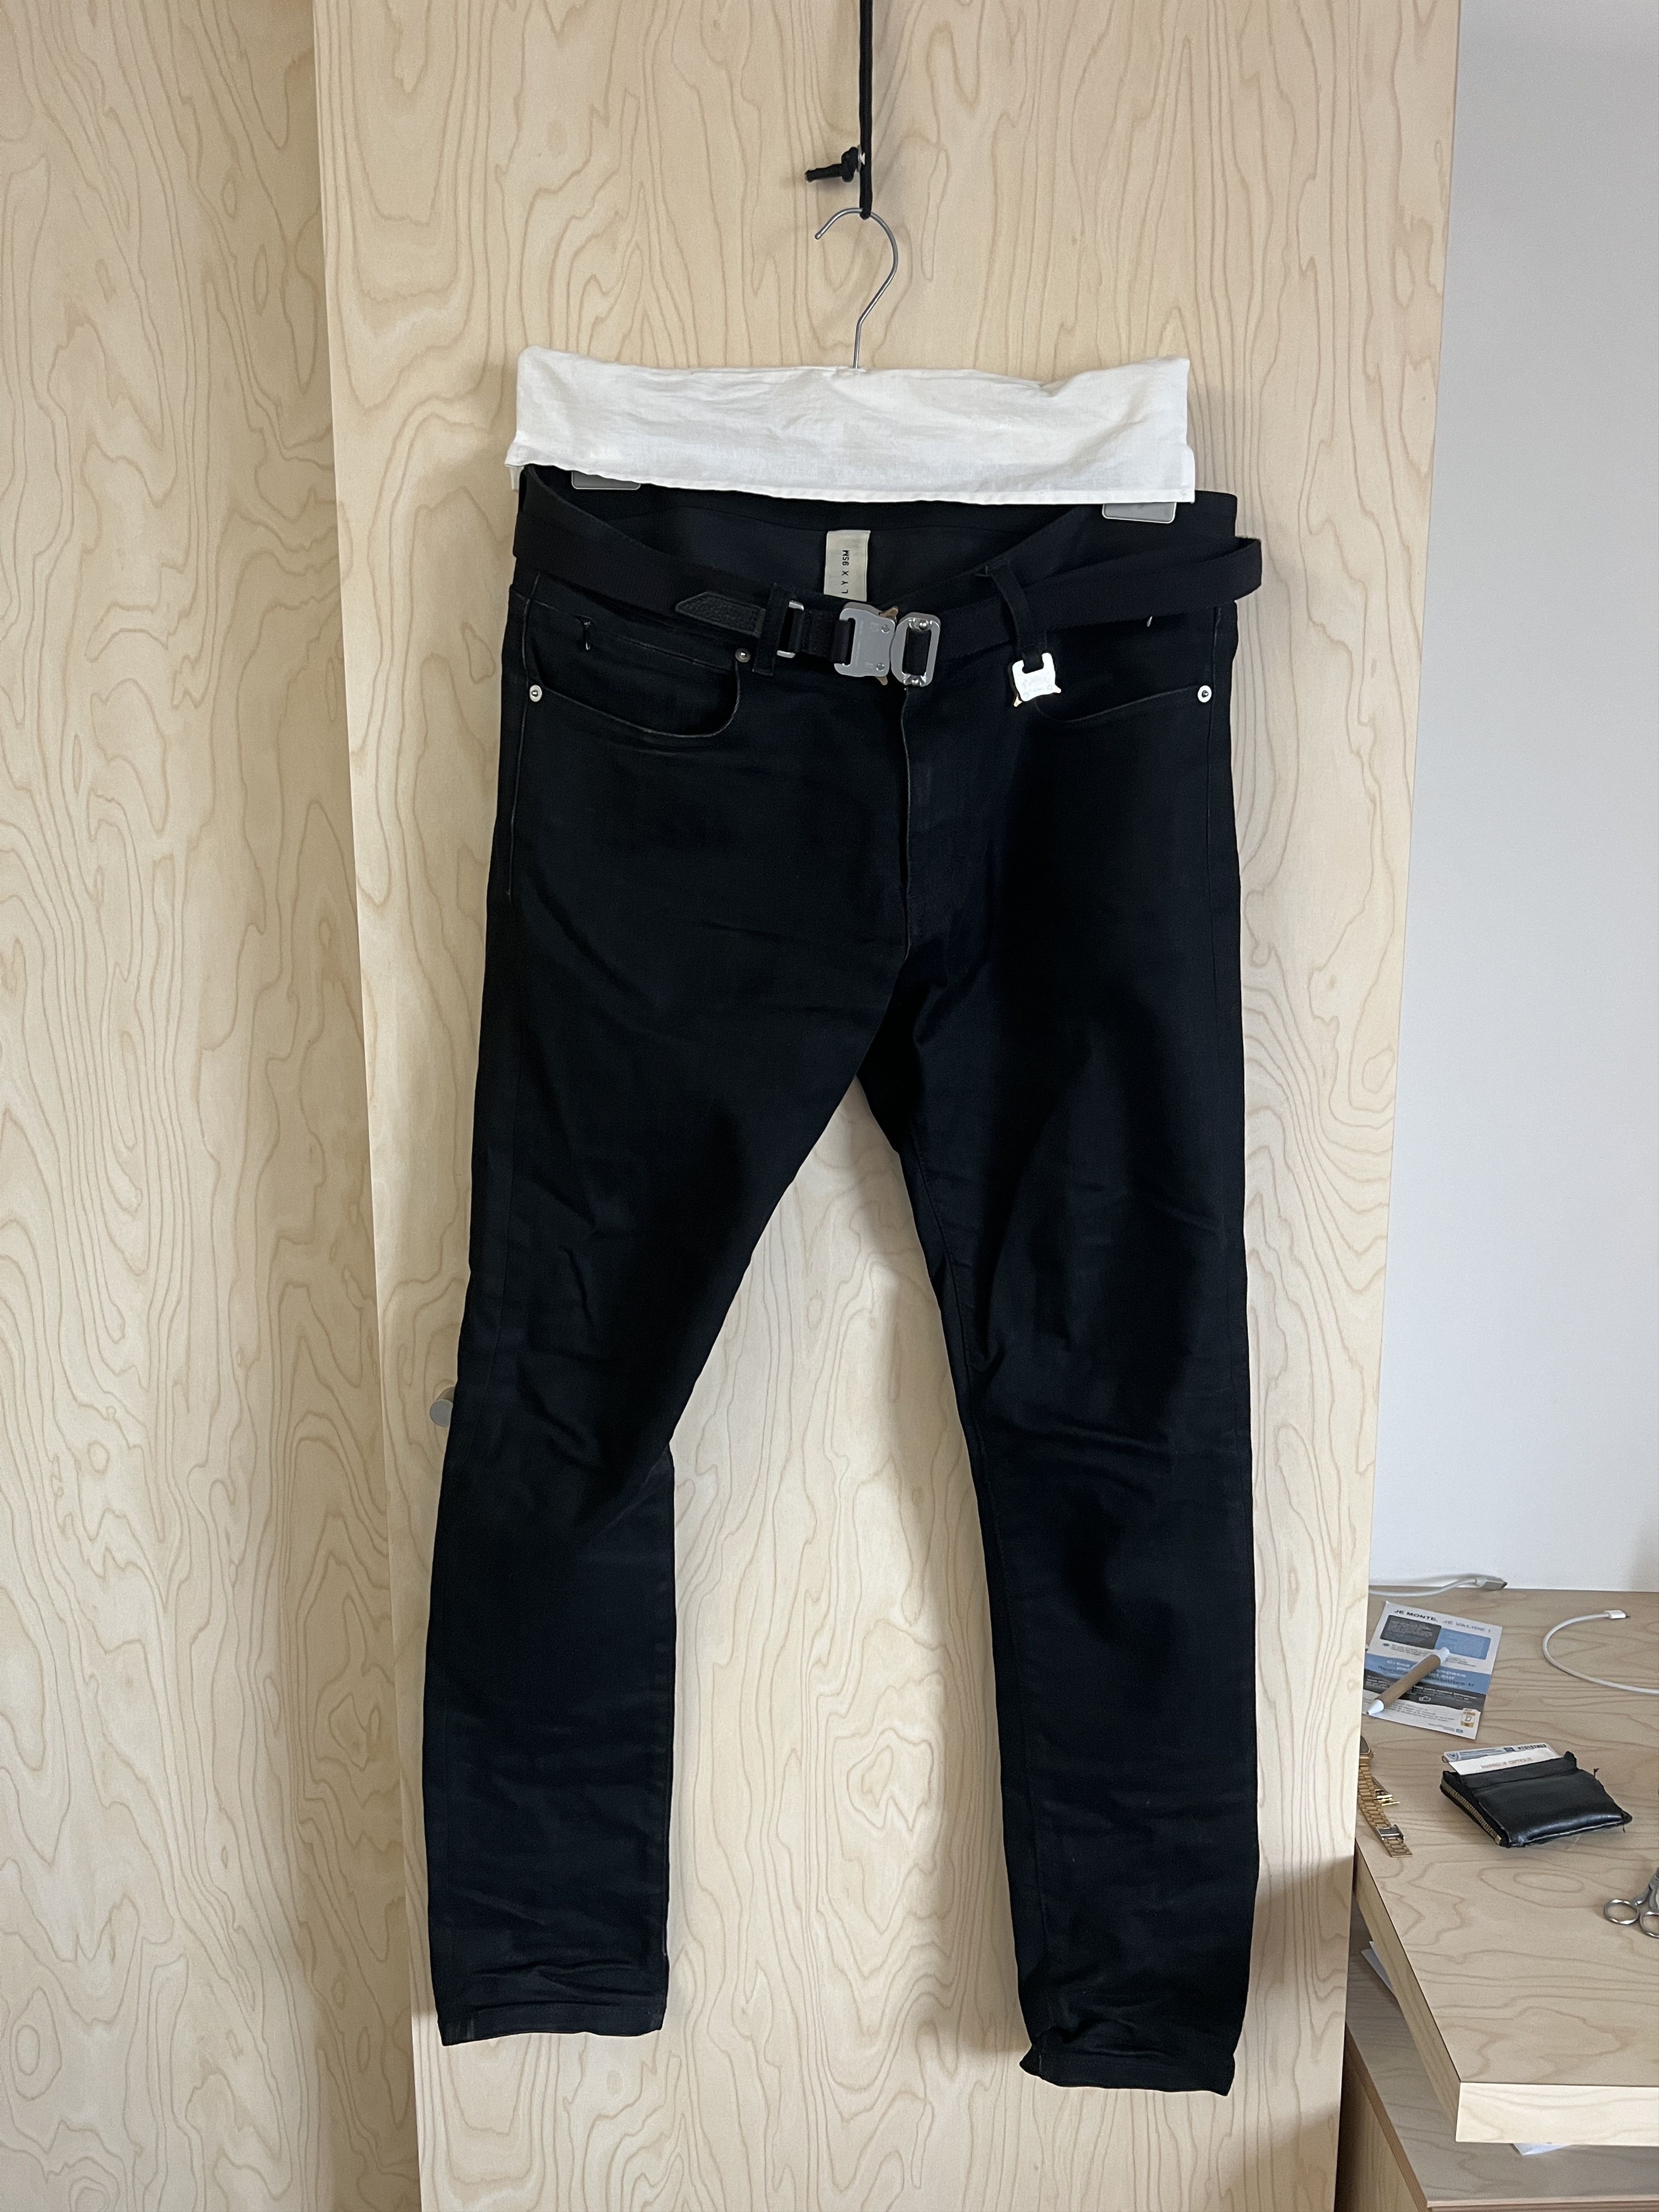 1017 ALYX 9SM Alyx Jeans with Alyx Belt | Grailed